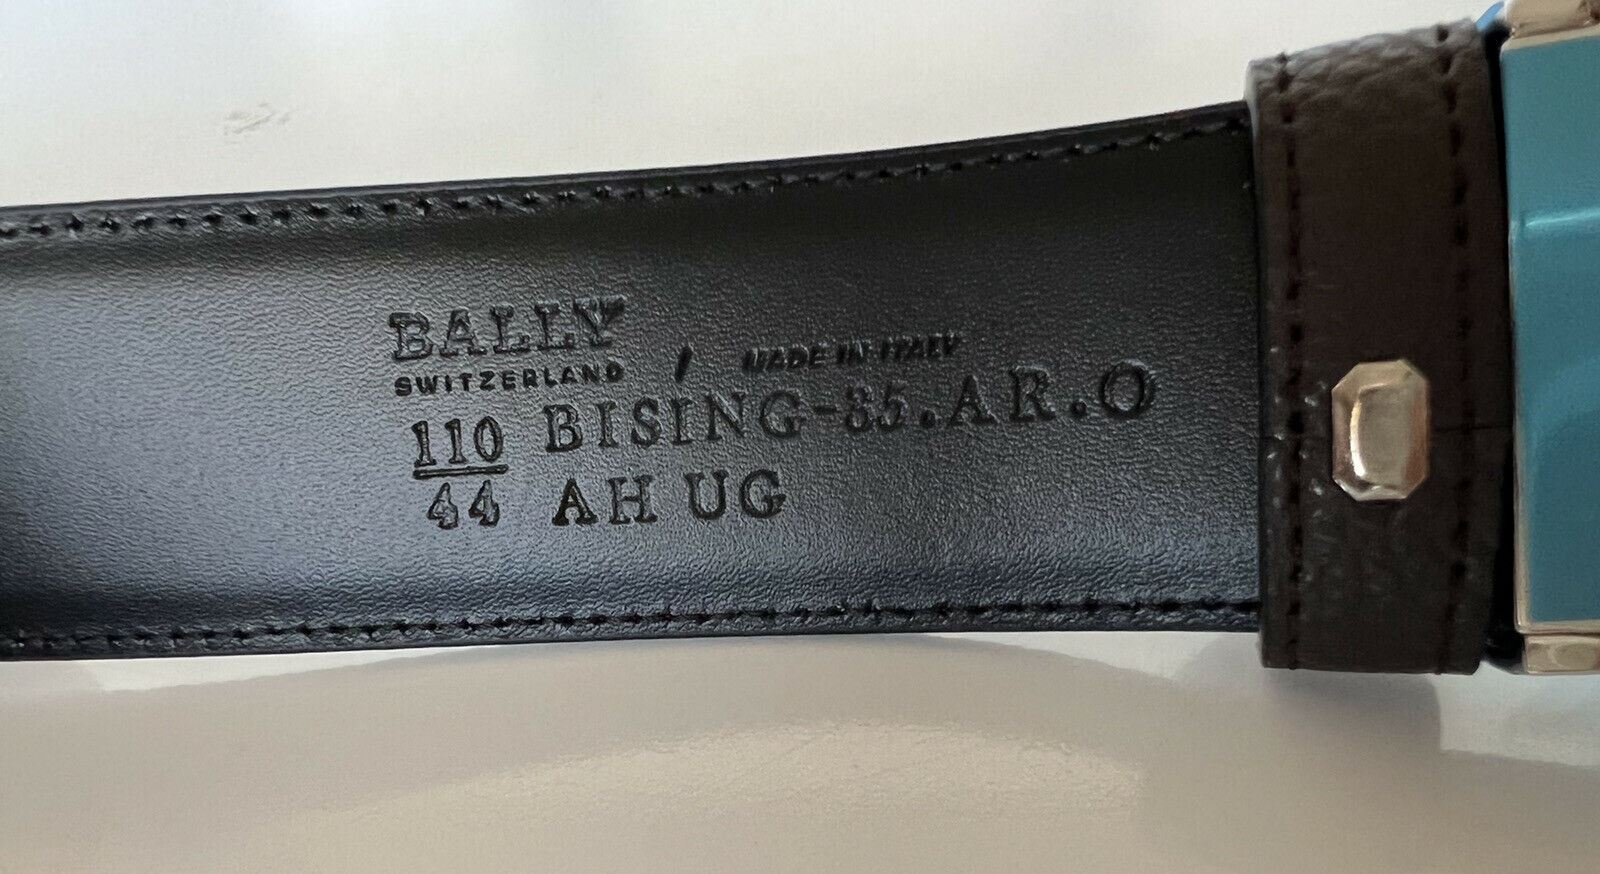 NIB 290 $ Bally Doppelseitiger Bising-Ledergürtel für Herren, Größe 44/110 